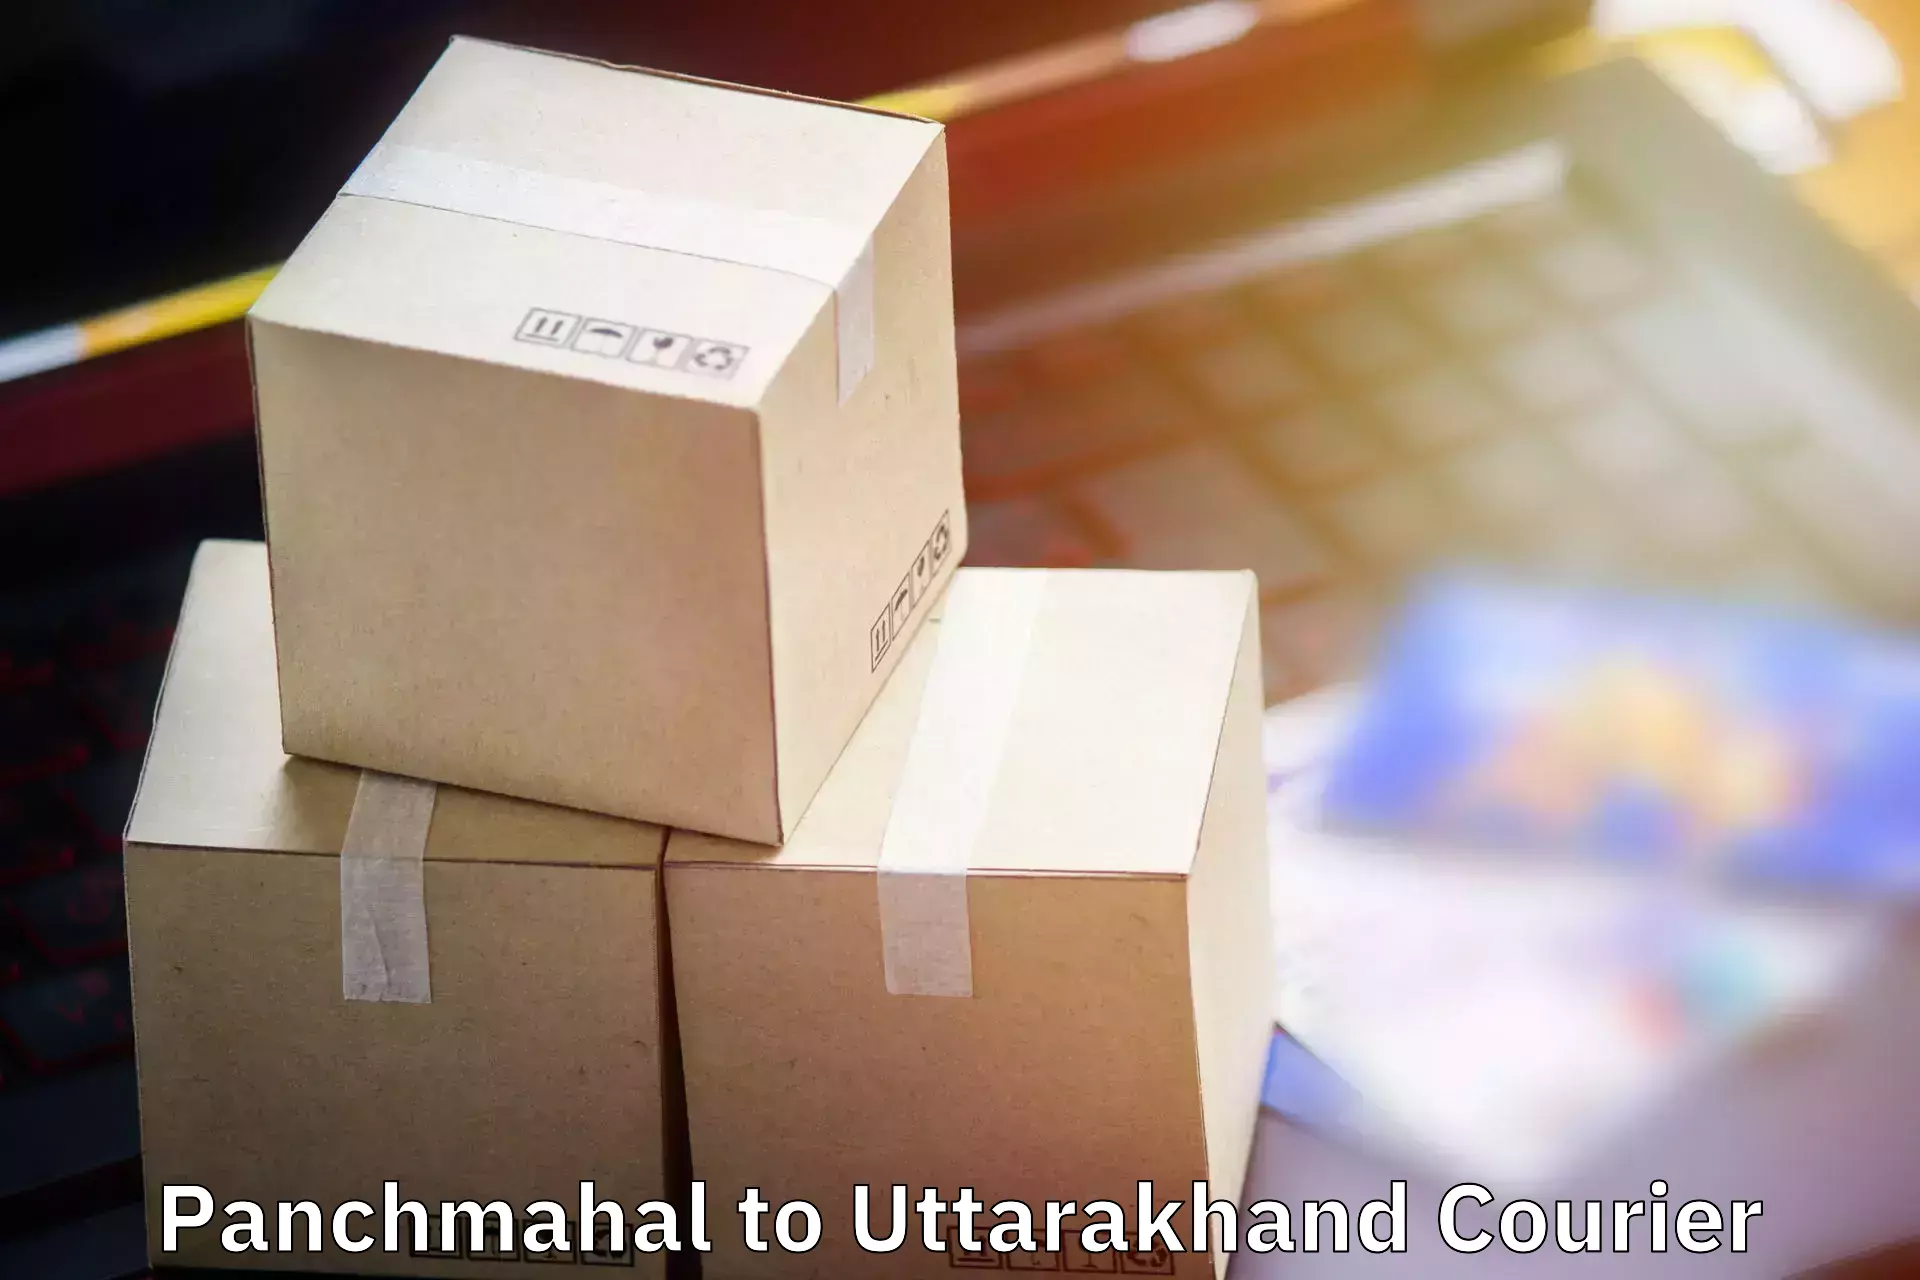 Baggage shipping experience Panchmahal to Srinagar Pauri Garhwal